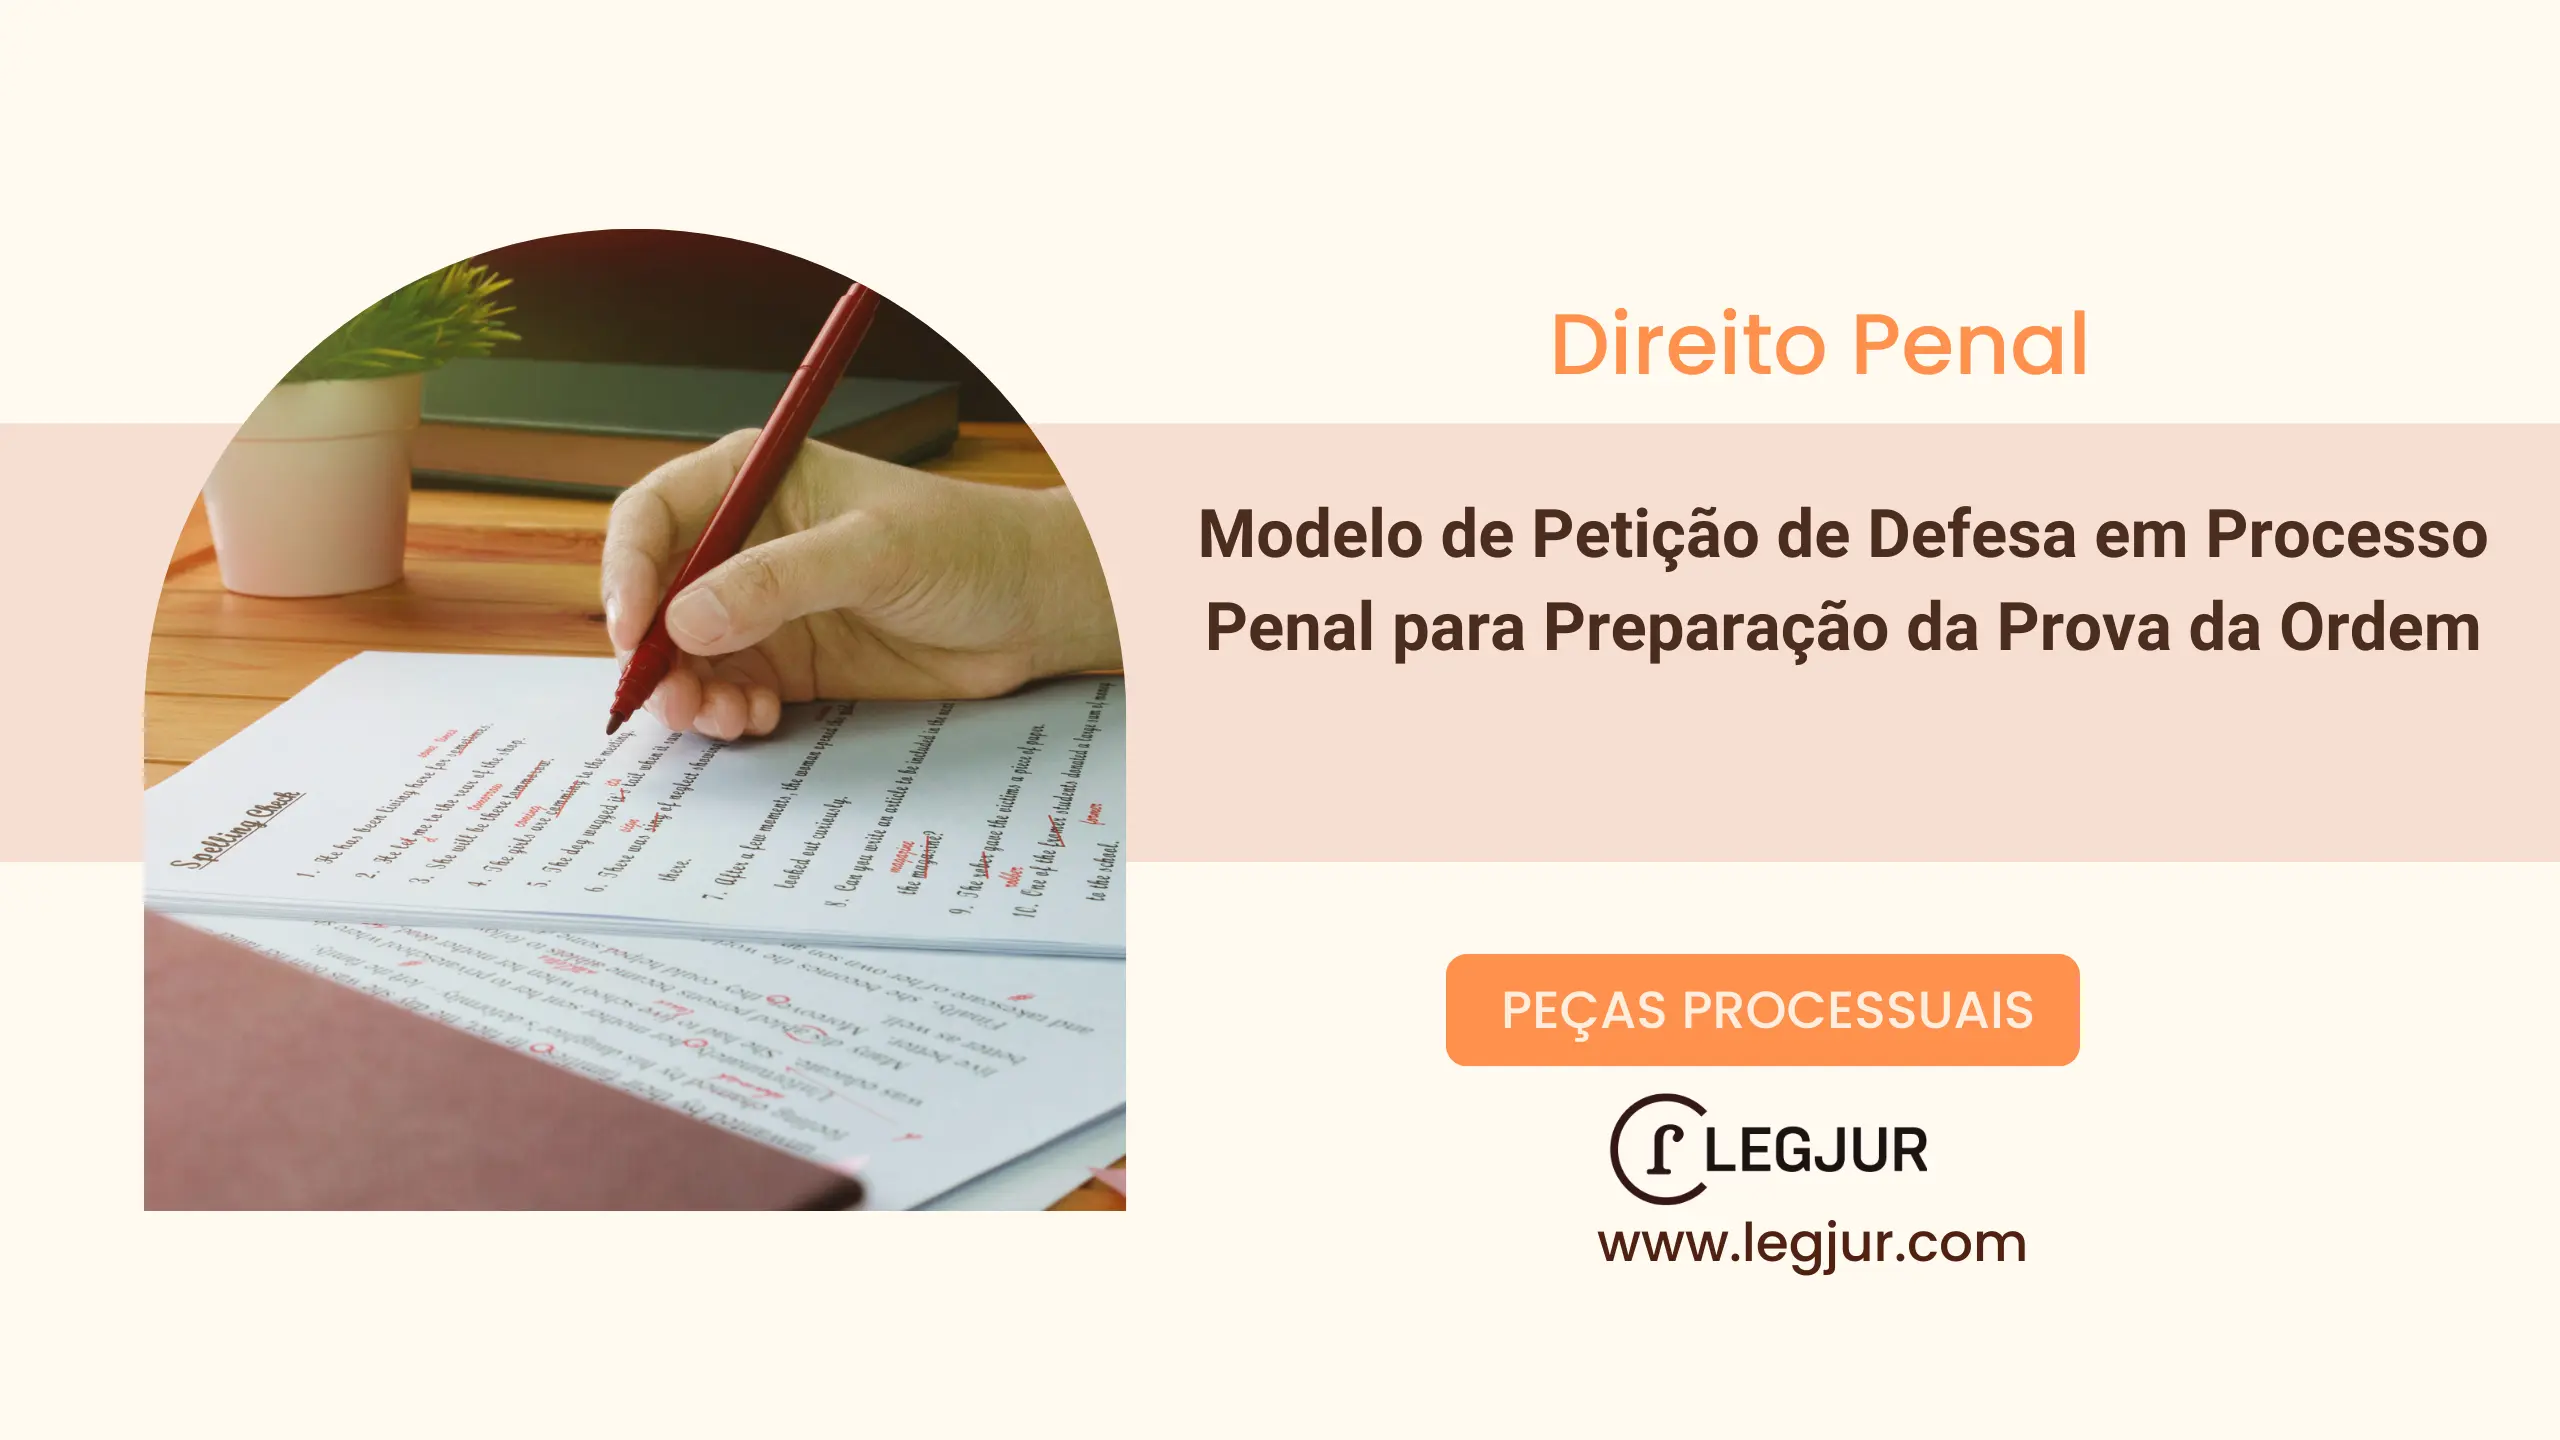 Modelo de Petição de Defesa em Processo Penal para Preparação da Prova da Ordem